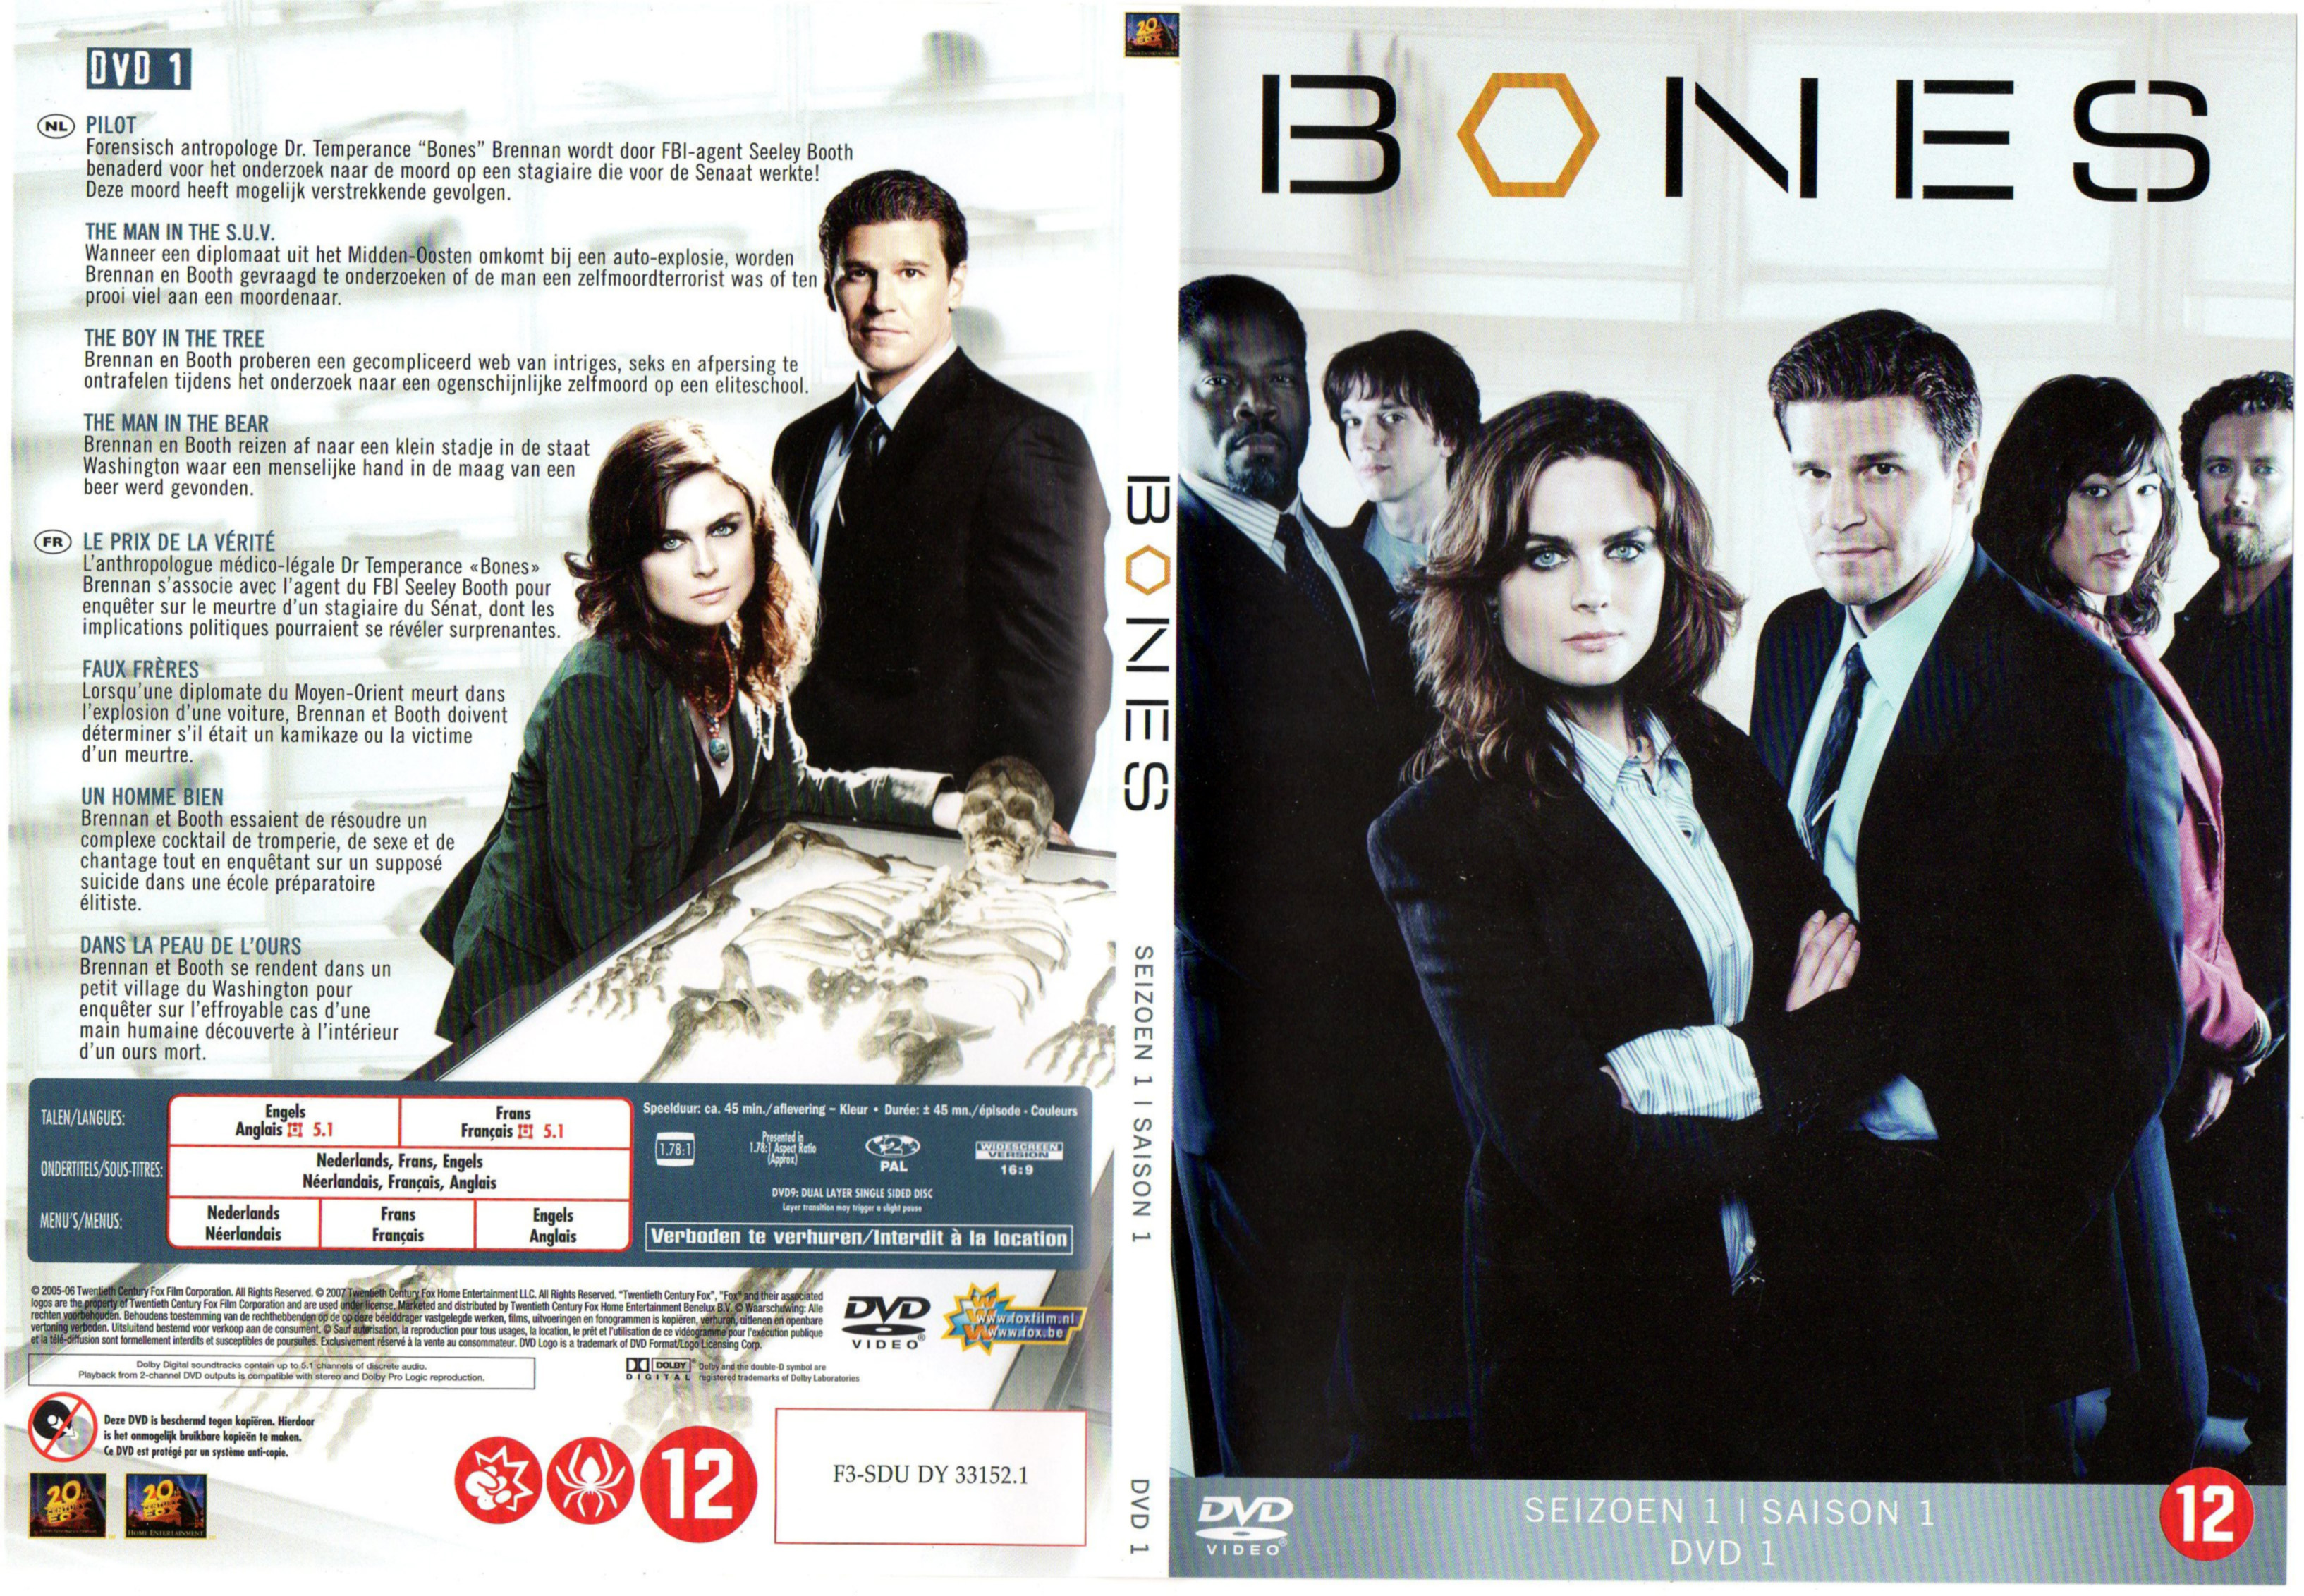 Jaquette DVD Bones Saison 1 DVD 1 v2